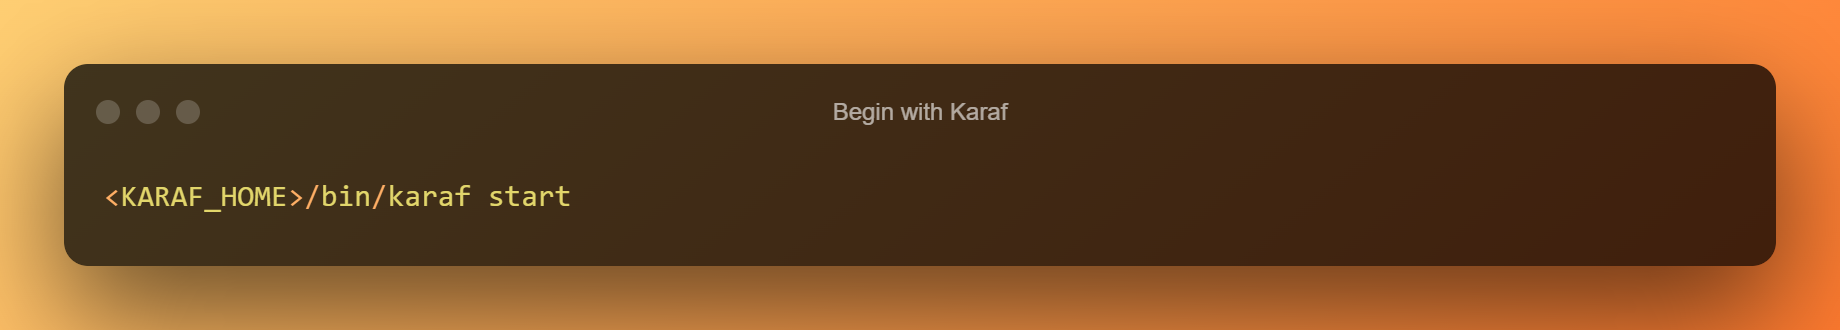 Begin With Karaf